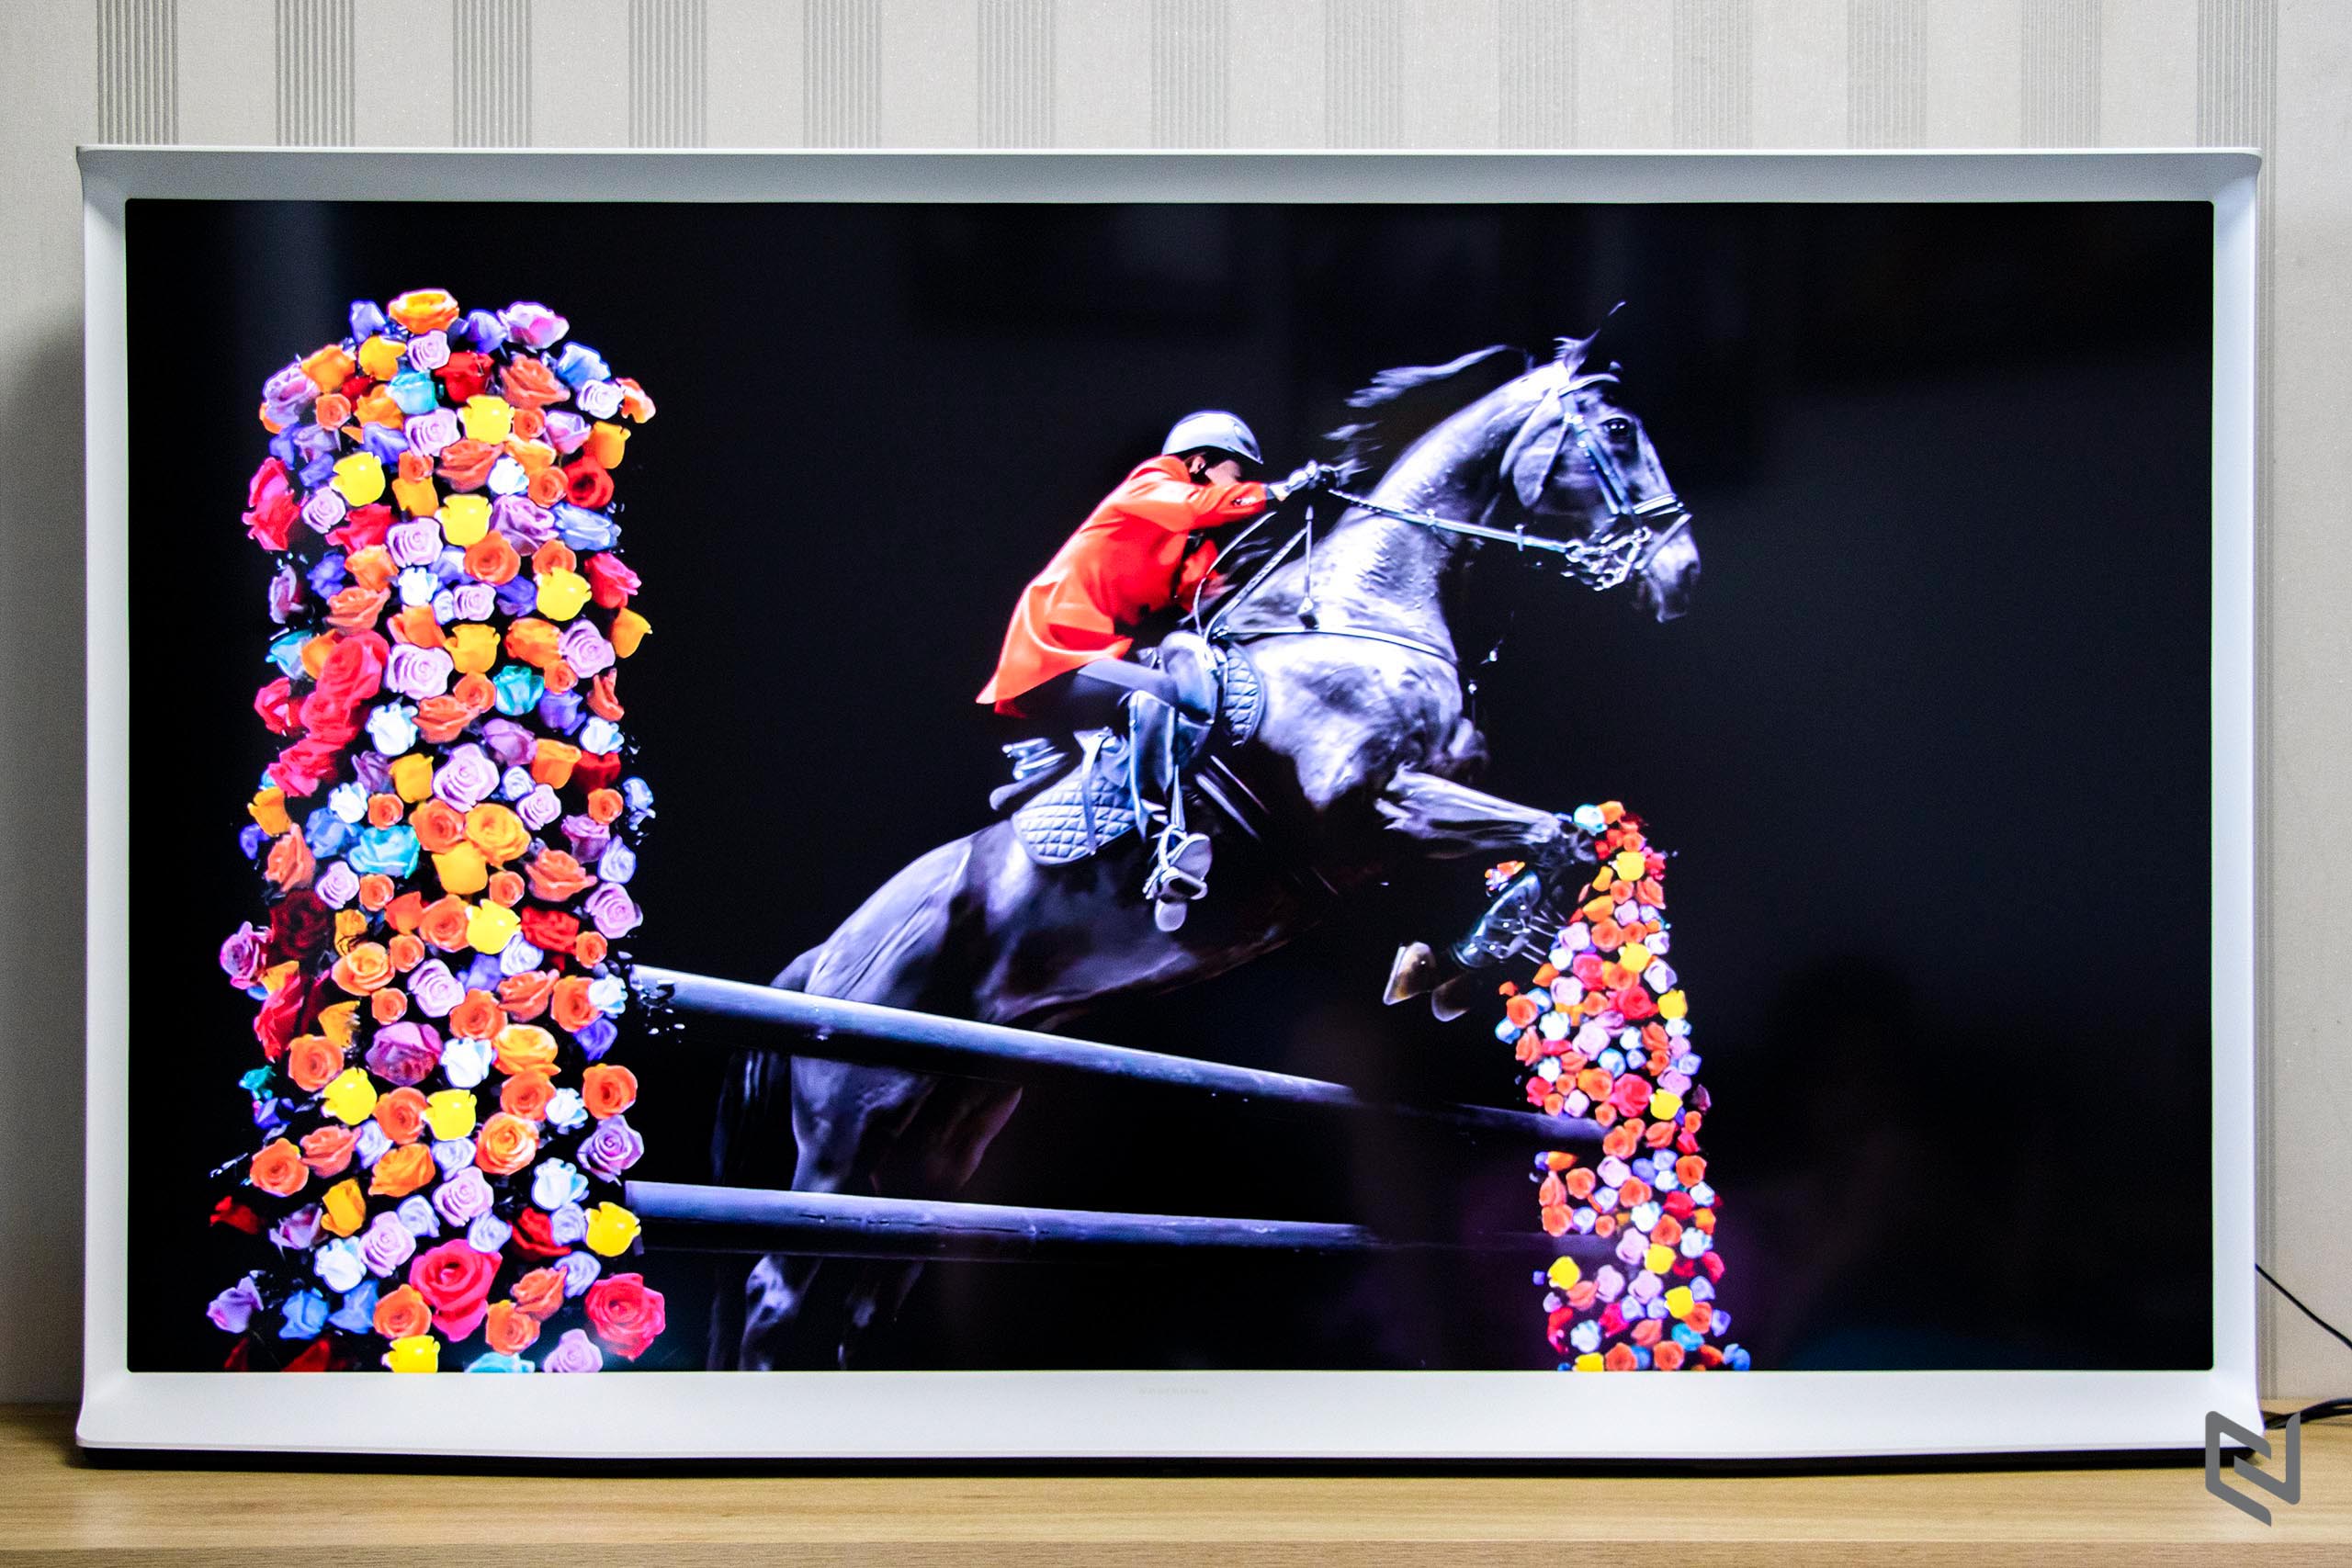 Trải nghiệm TV Samsung The Serif: Đẹp ở mọi góc nhìn, hình ảnh và âm thanh ấn tượng